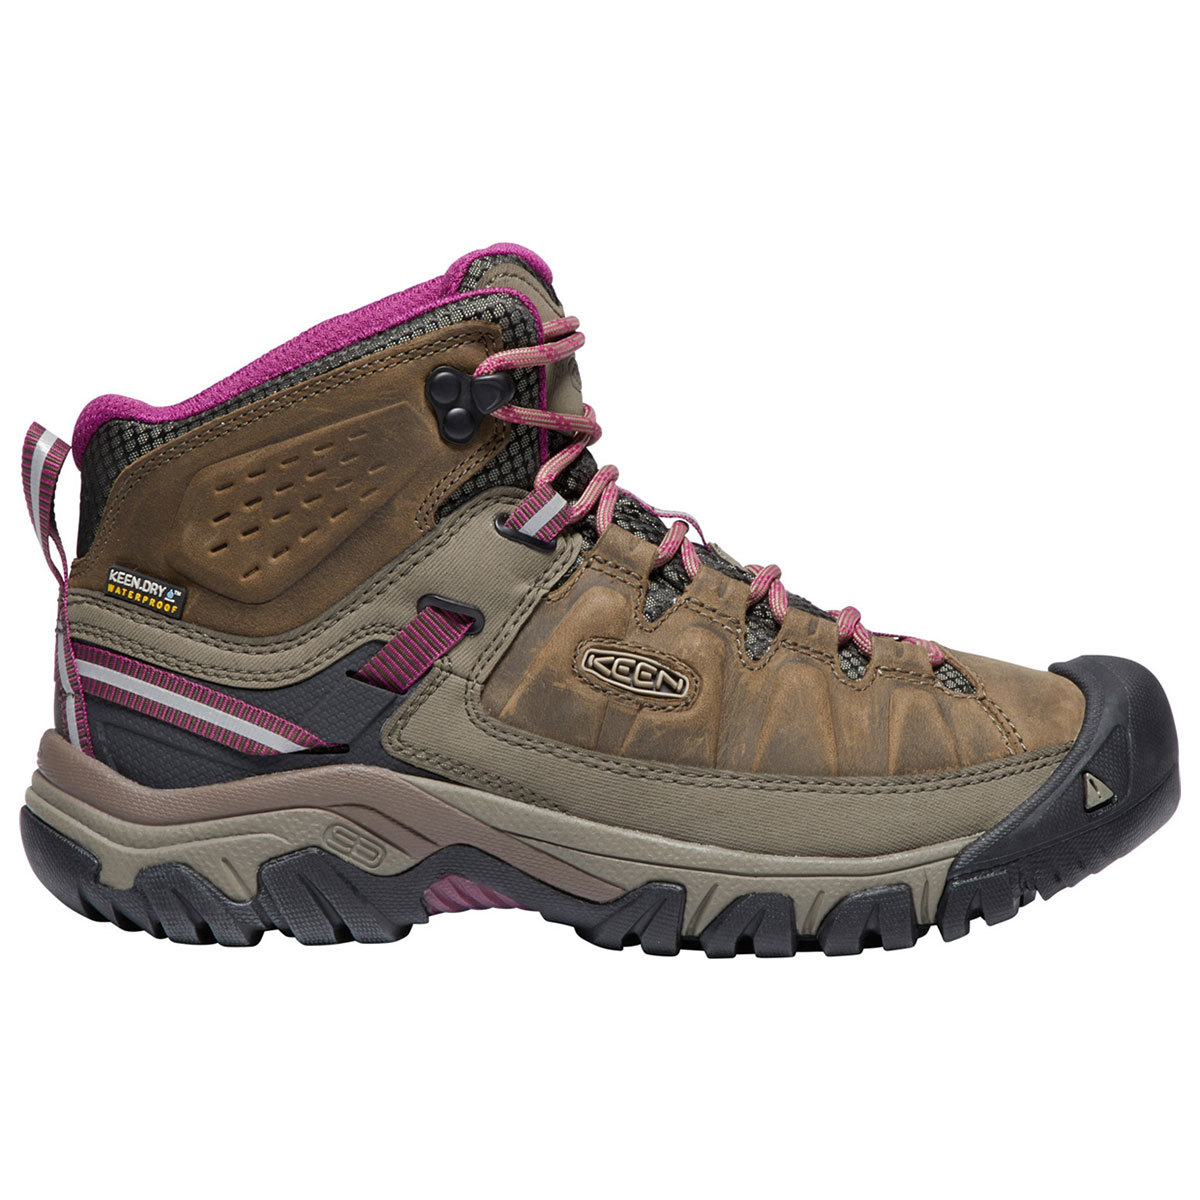 Keen Women's Targhee Iii Waterproof Mid Hiking Boots - Size 10.5